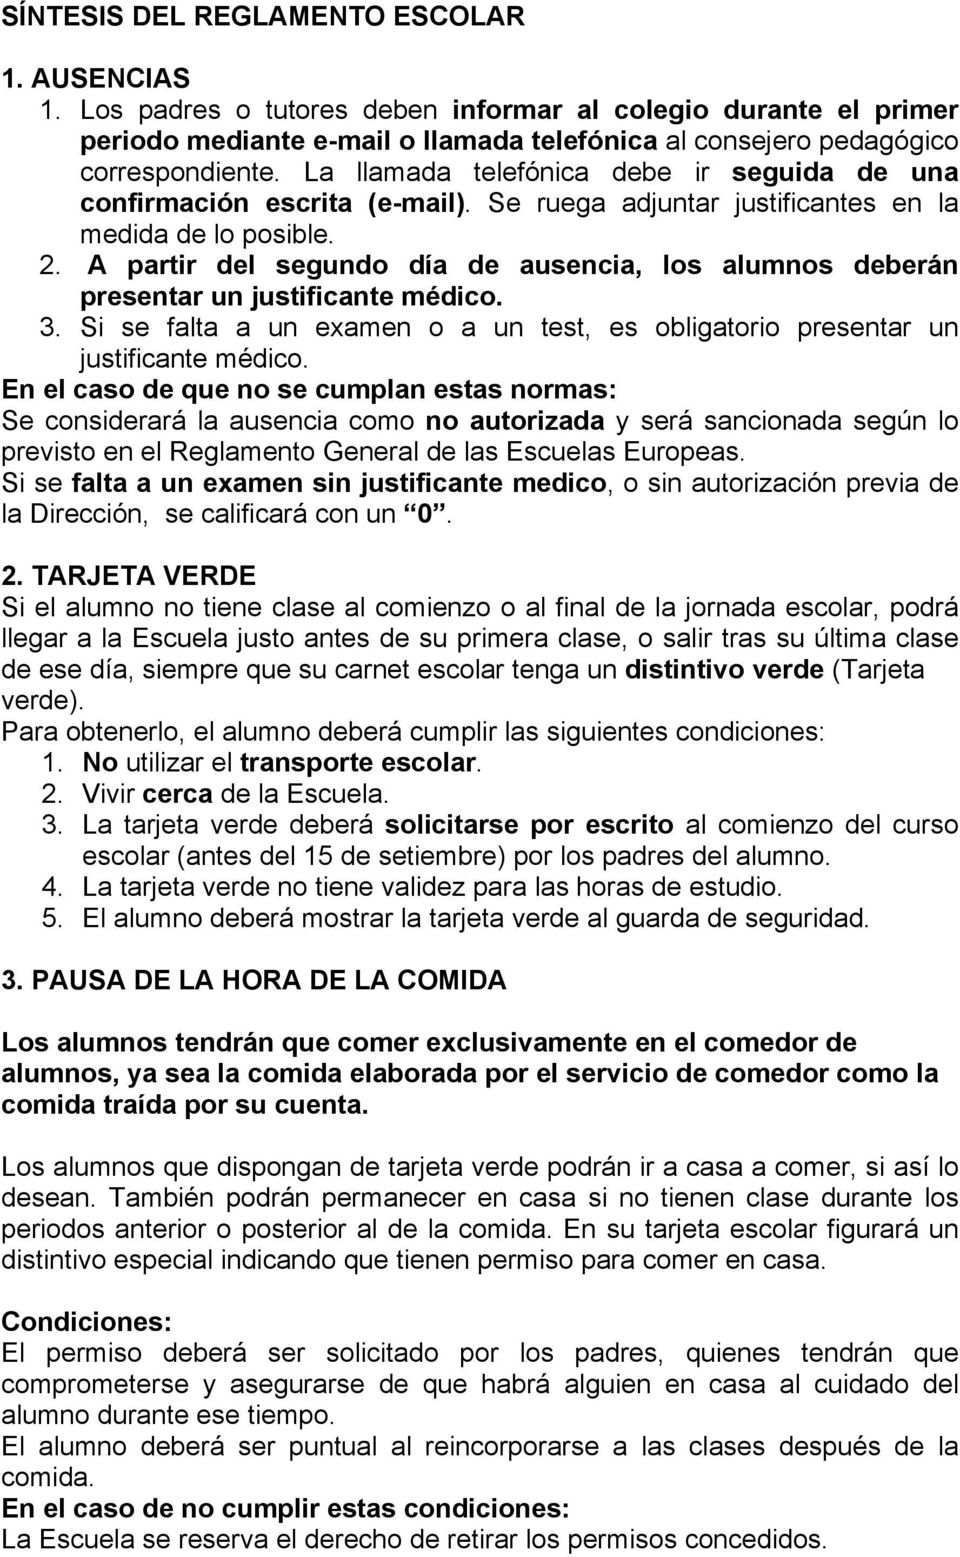 SÍNTESIS DEL REGLAMENTO ESCOLAR NORMAS DE ASISTENCIA 1. AUSENCIAS - PDF  Free Download